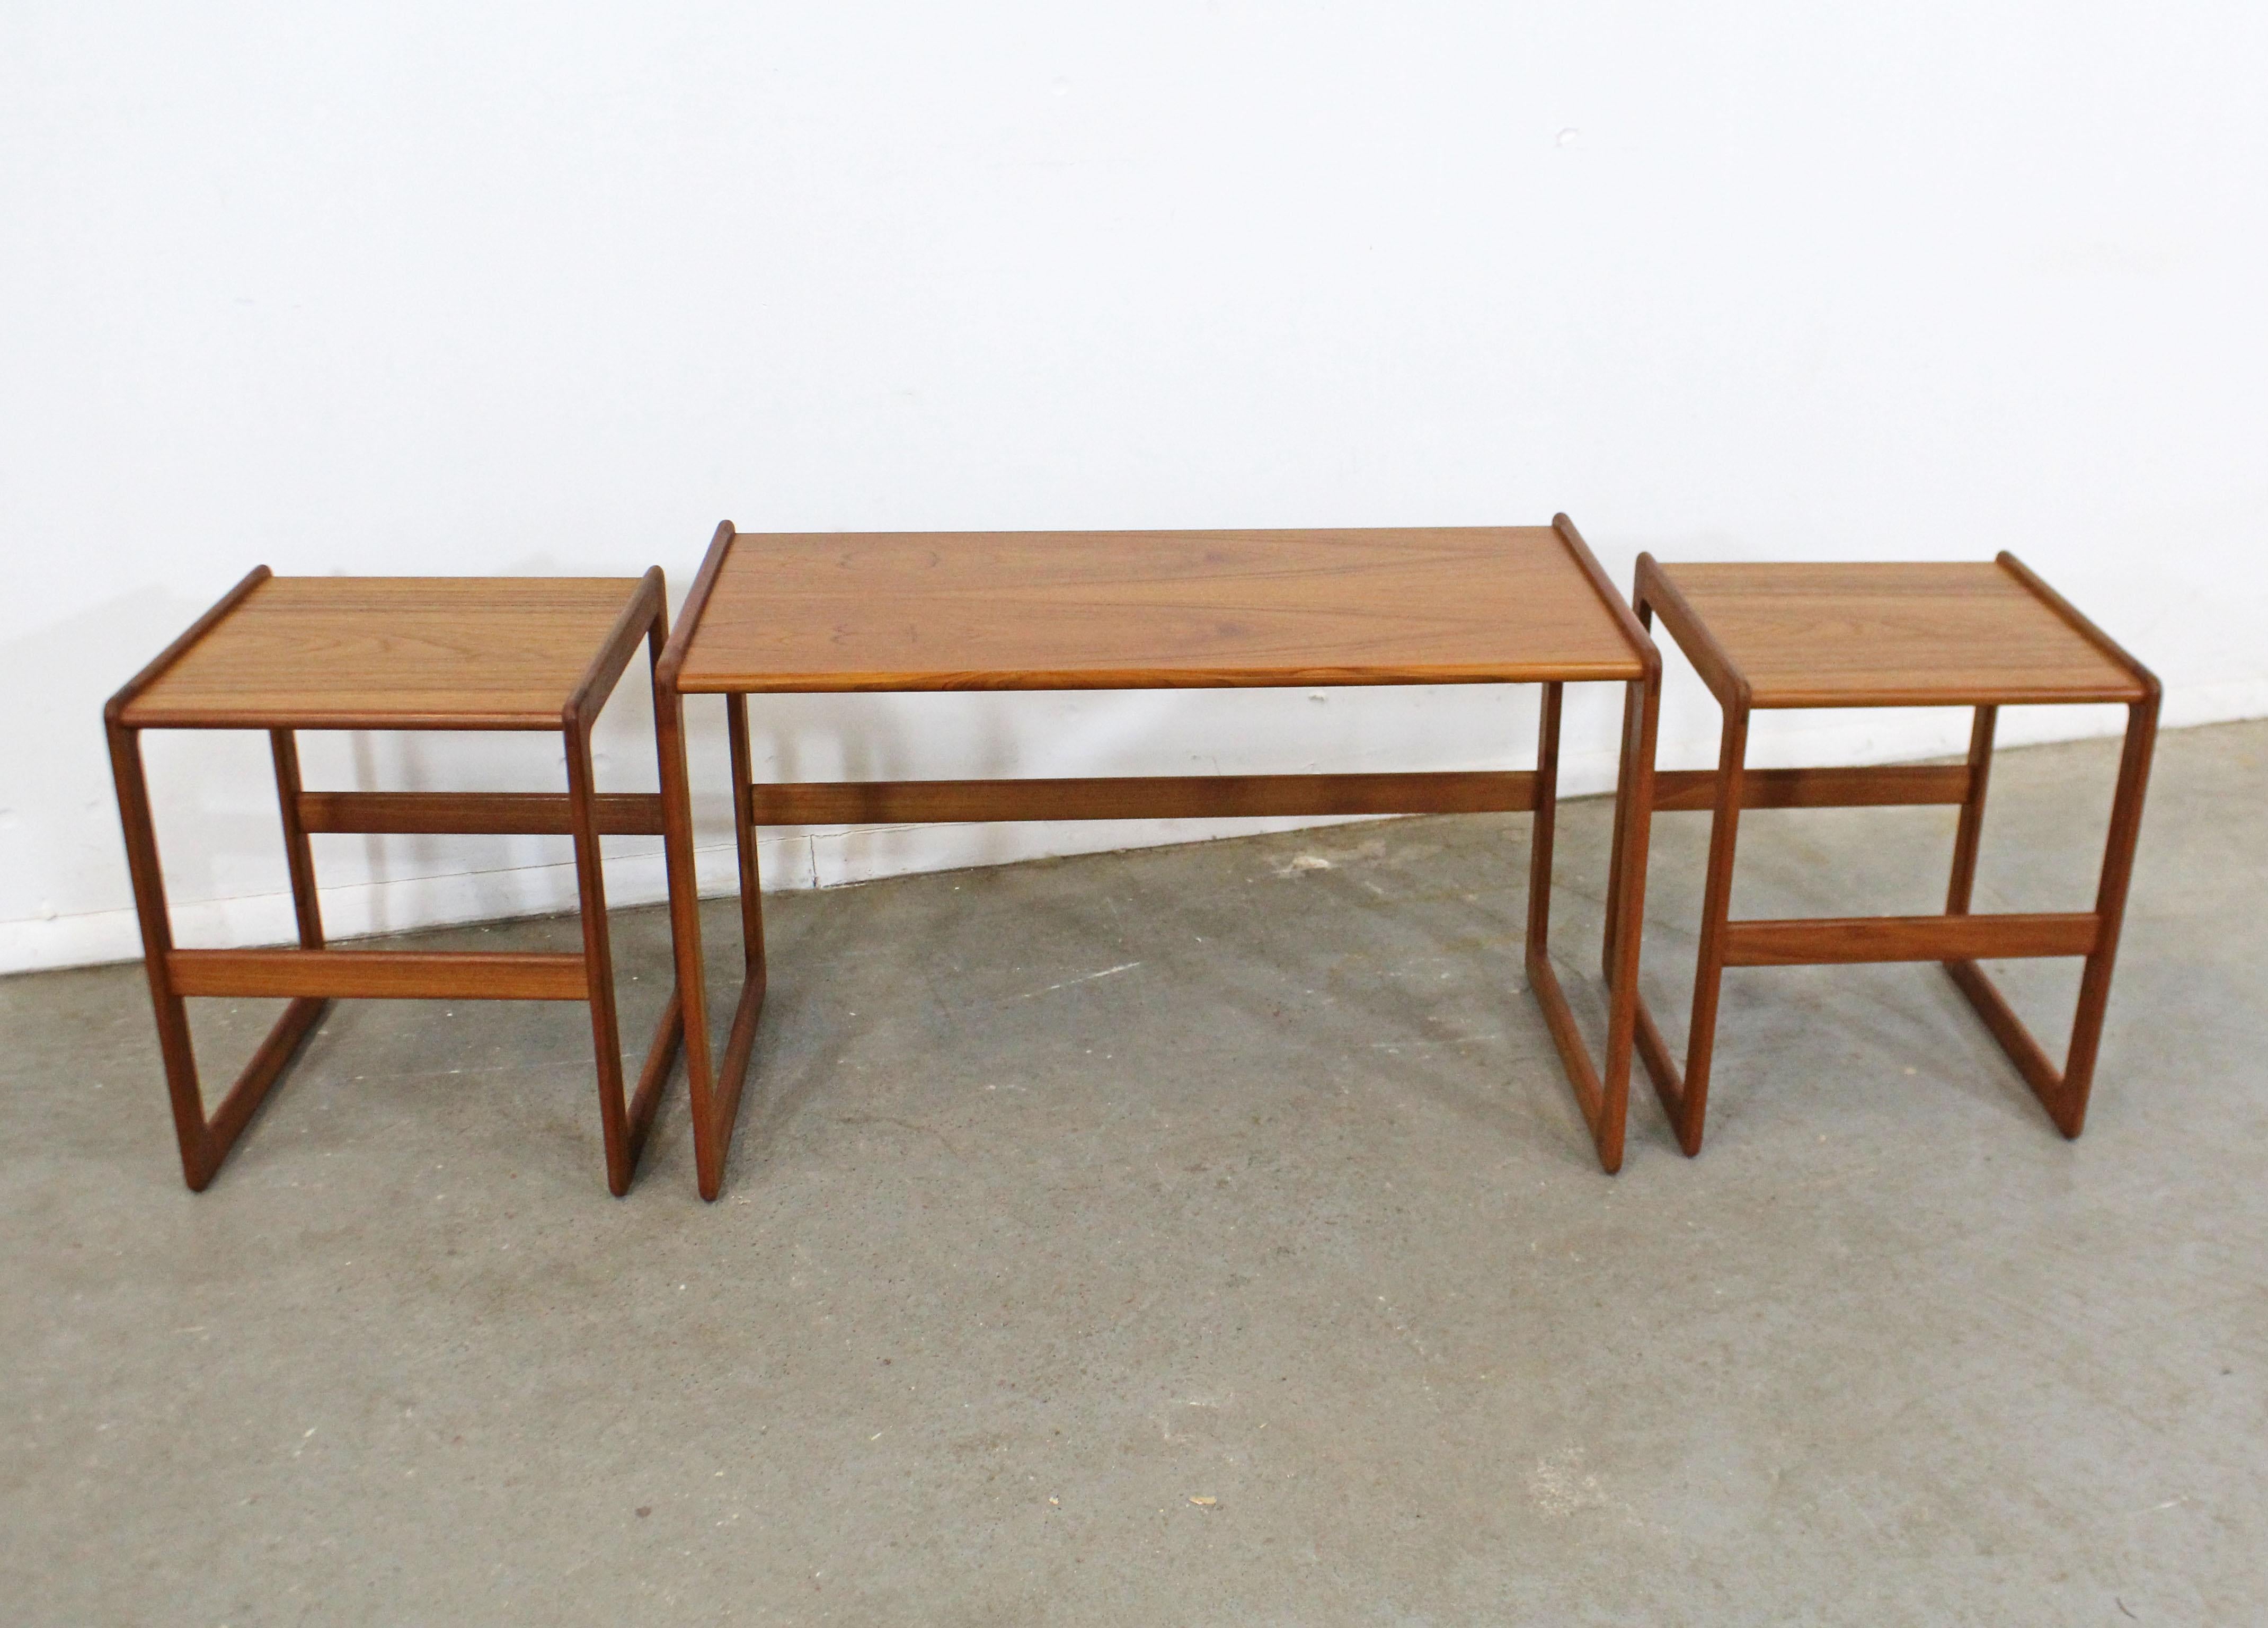 Quelle trouvaille. Cet ensemble multifonctionnel de 3 tables gigognes danoises modernes en teck a été conçu par Arne Hovmand-Olsen pour Mogens Kold, vers 1962. Comprend deux tables plus petites qui s'insèrent parfaitement sous une table plus grande.